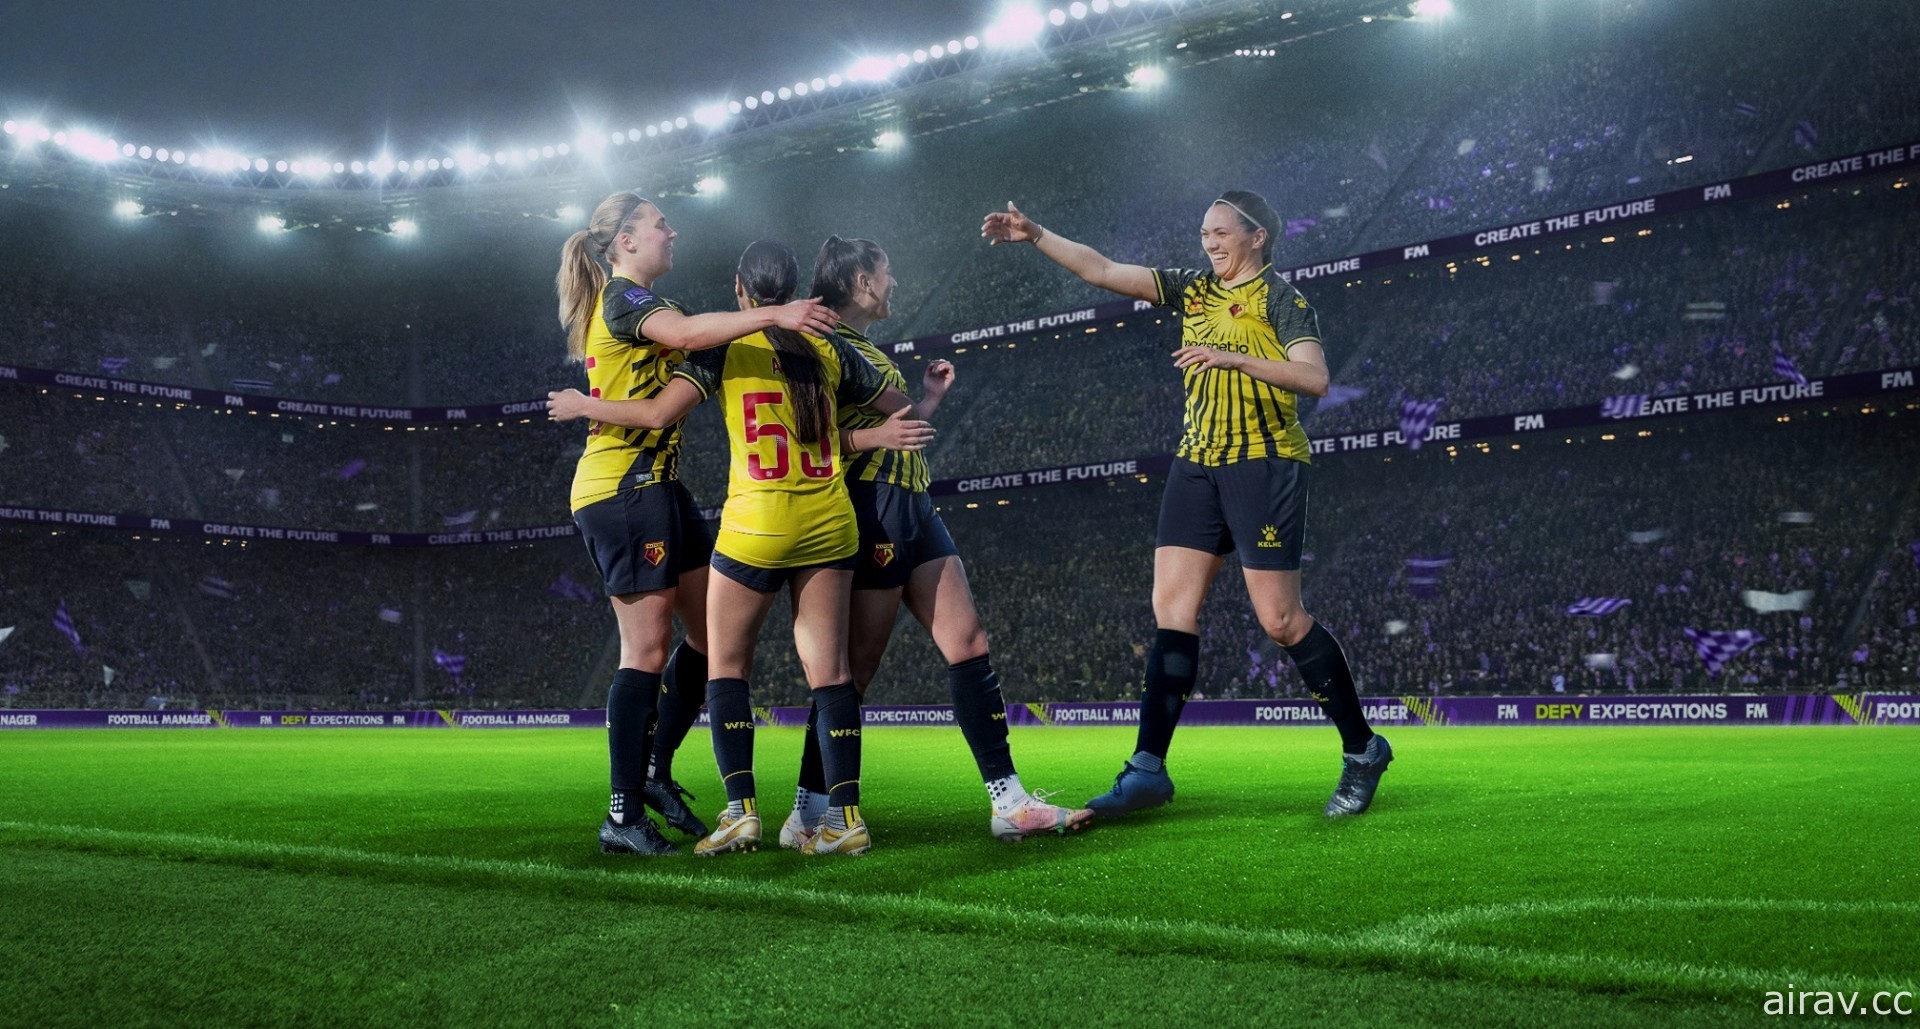 足球模擬經營遊戲《足球經理》計畫新增女子足球隊 未來可選擇男子或女子足球隊